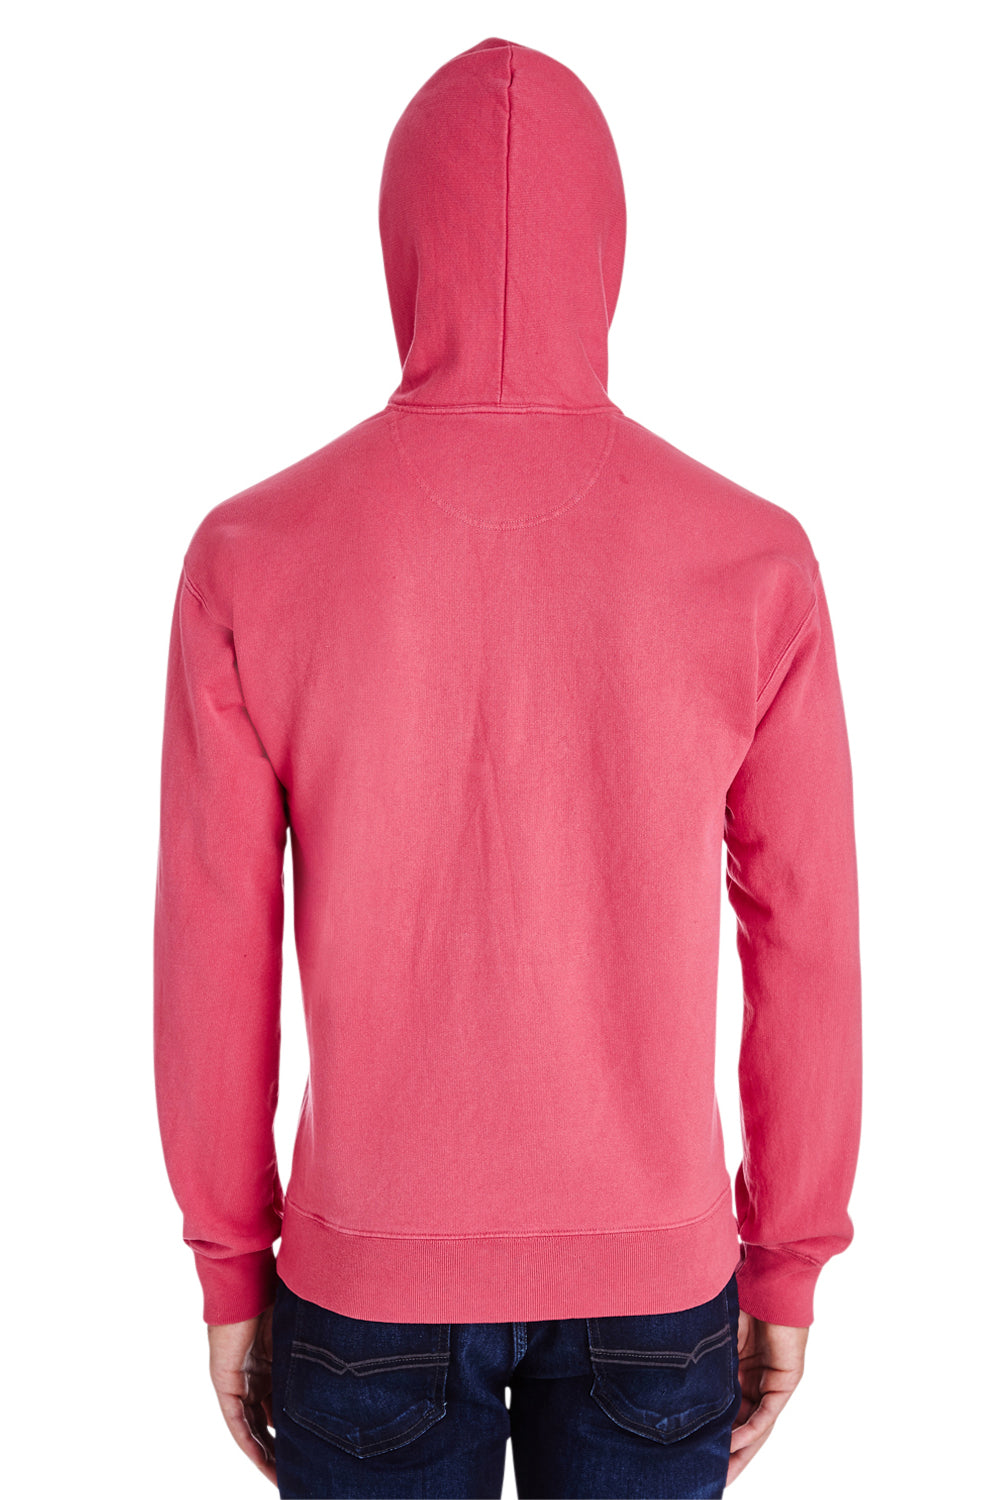 ComfortWash By Hanes GDH450 Mens Hooded Sweatshirt Hoodie Crimson Red Back